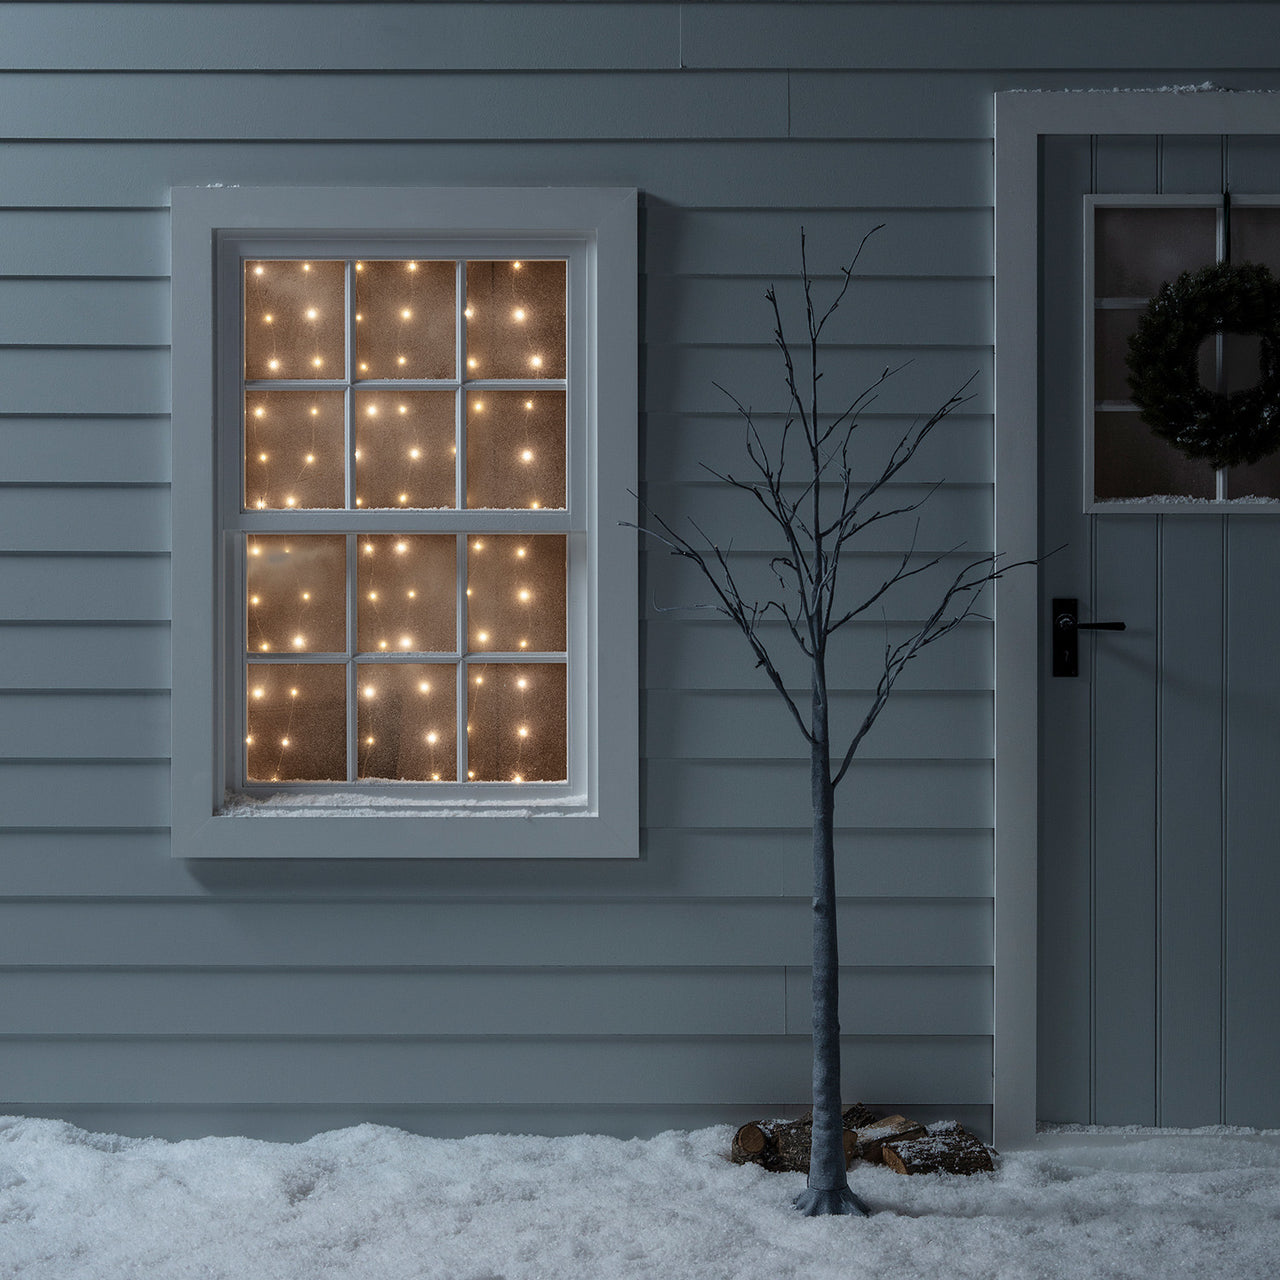 Häuserfassade mit LED Micro Lichtervorhang in Warmweiß.